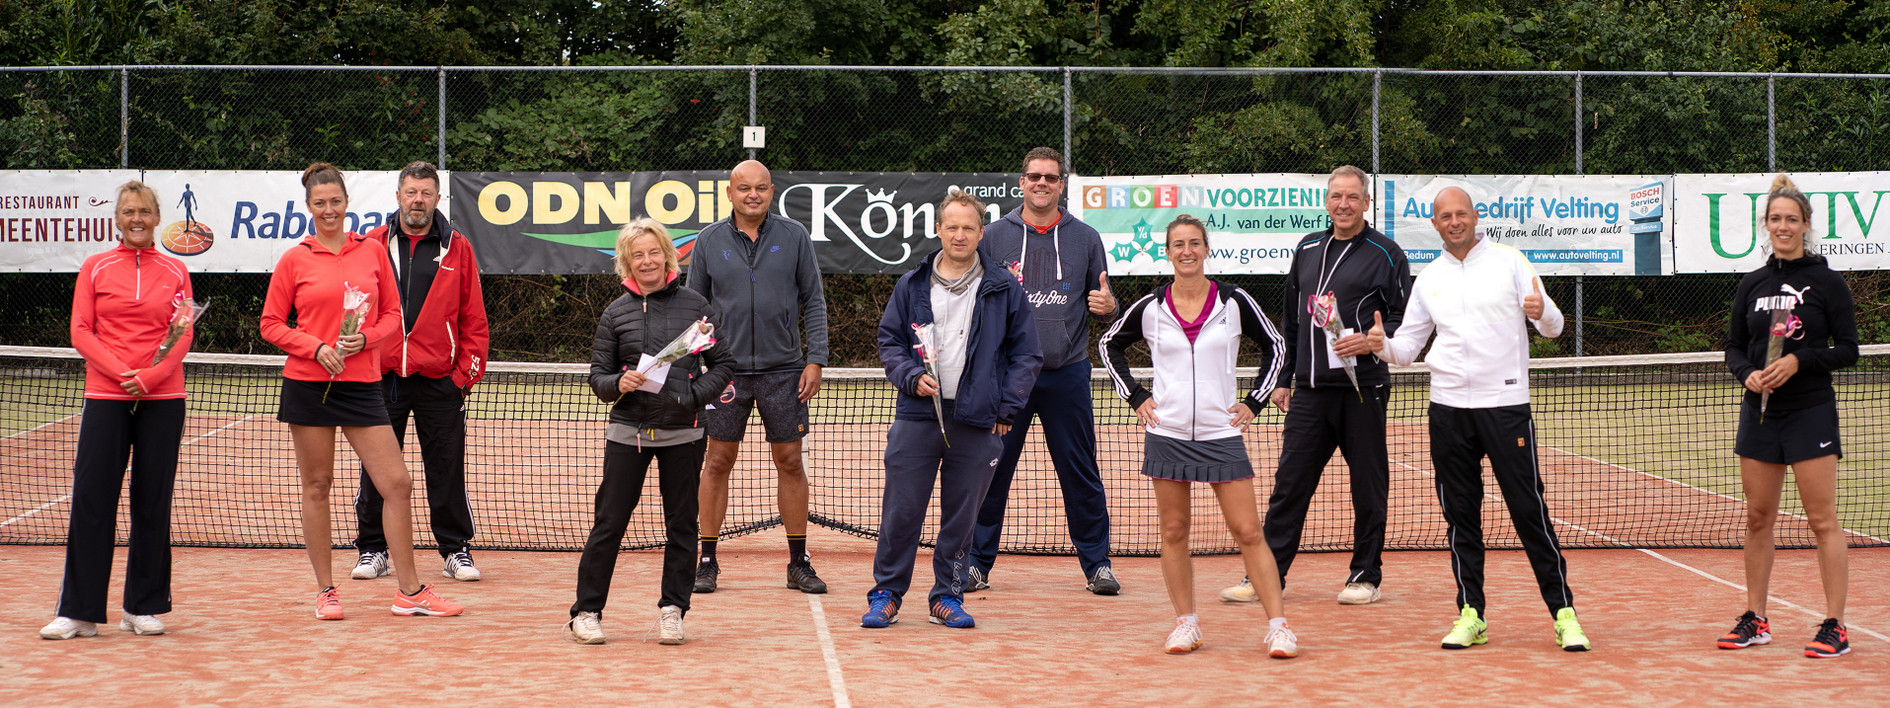 Arjen Robben tennistoernooi weer geslaagd - LTC Bedum editie 2020